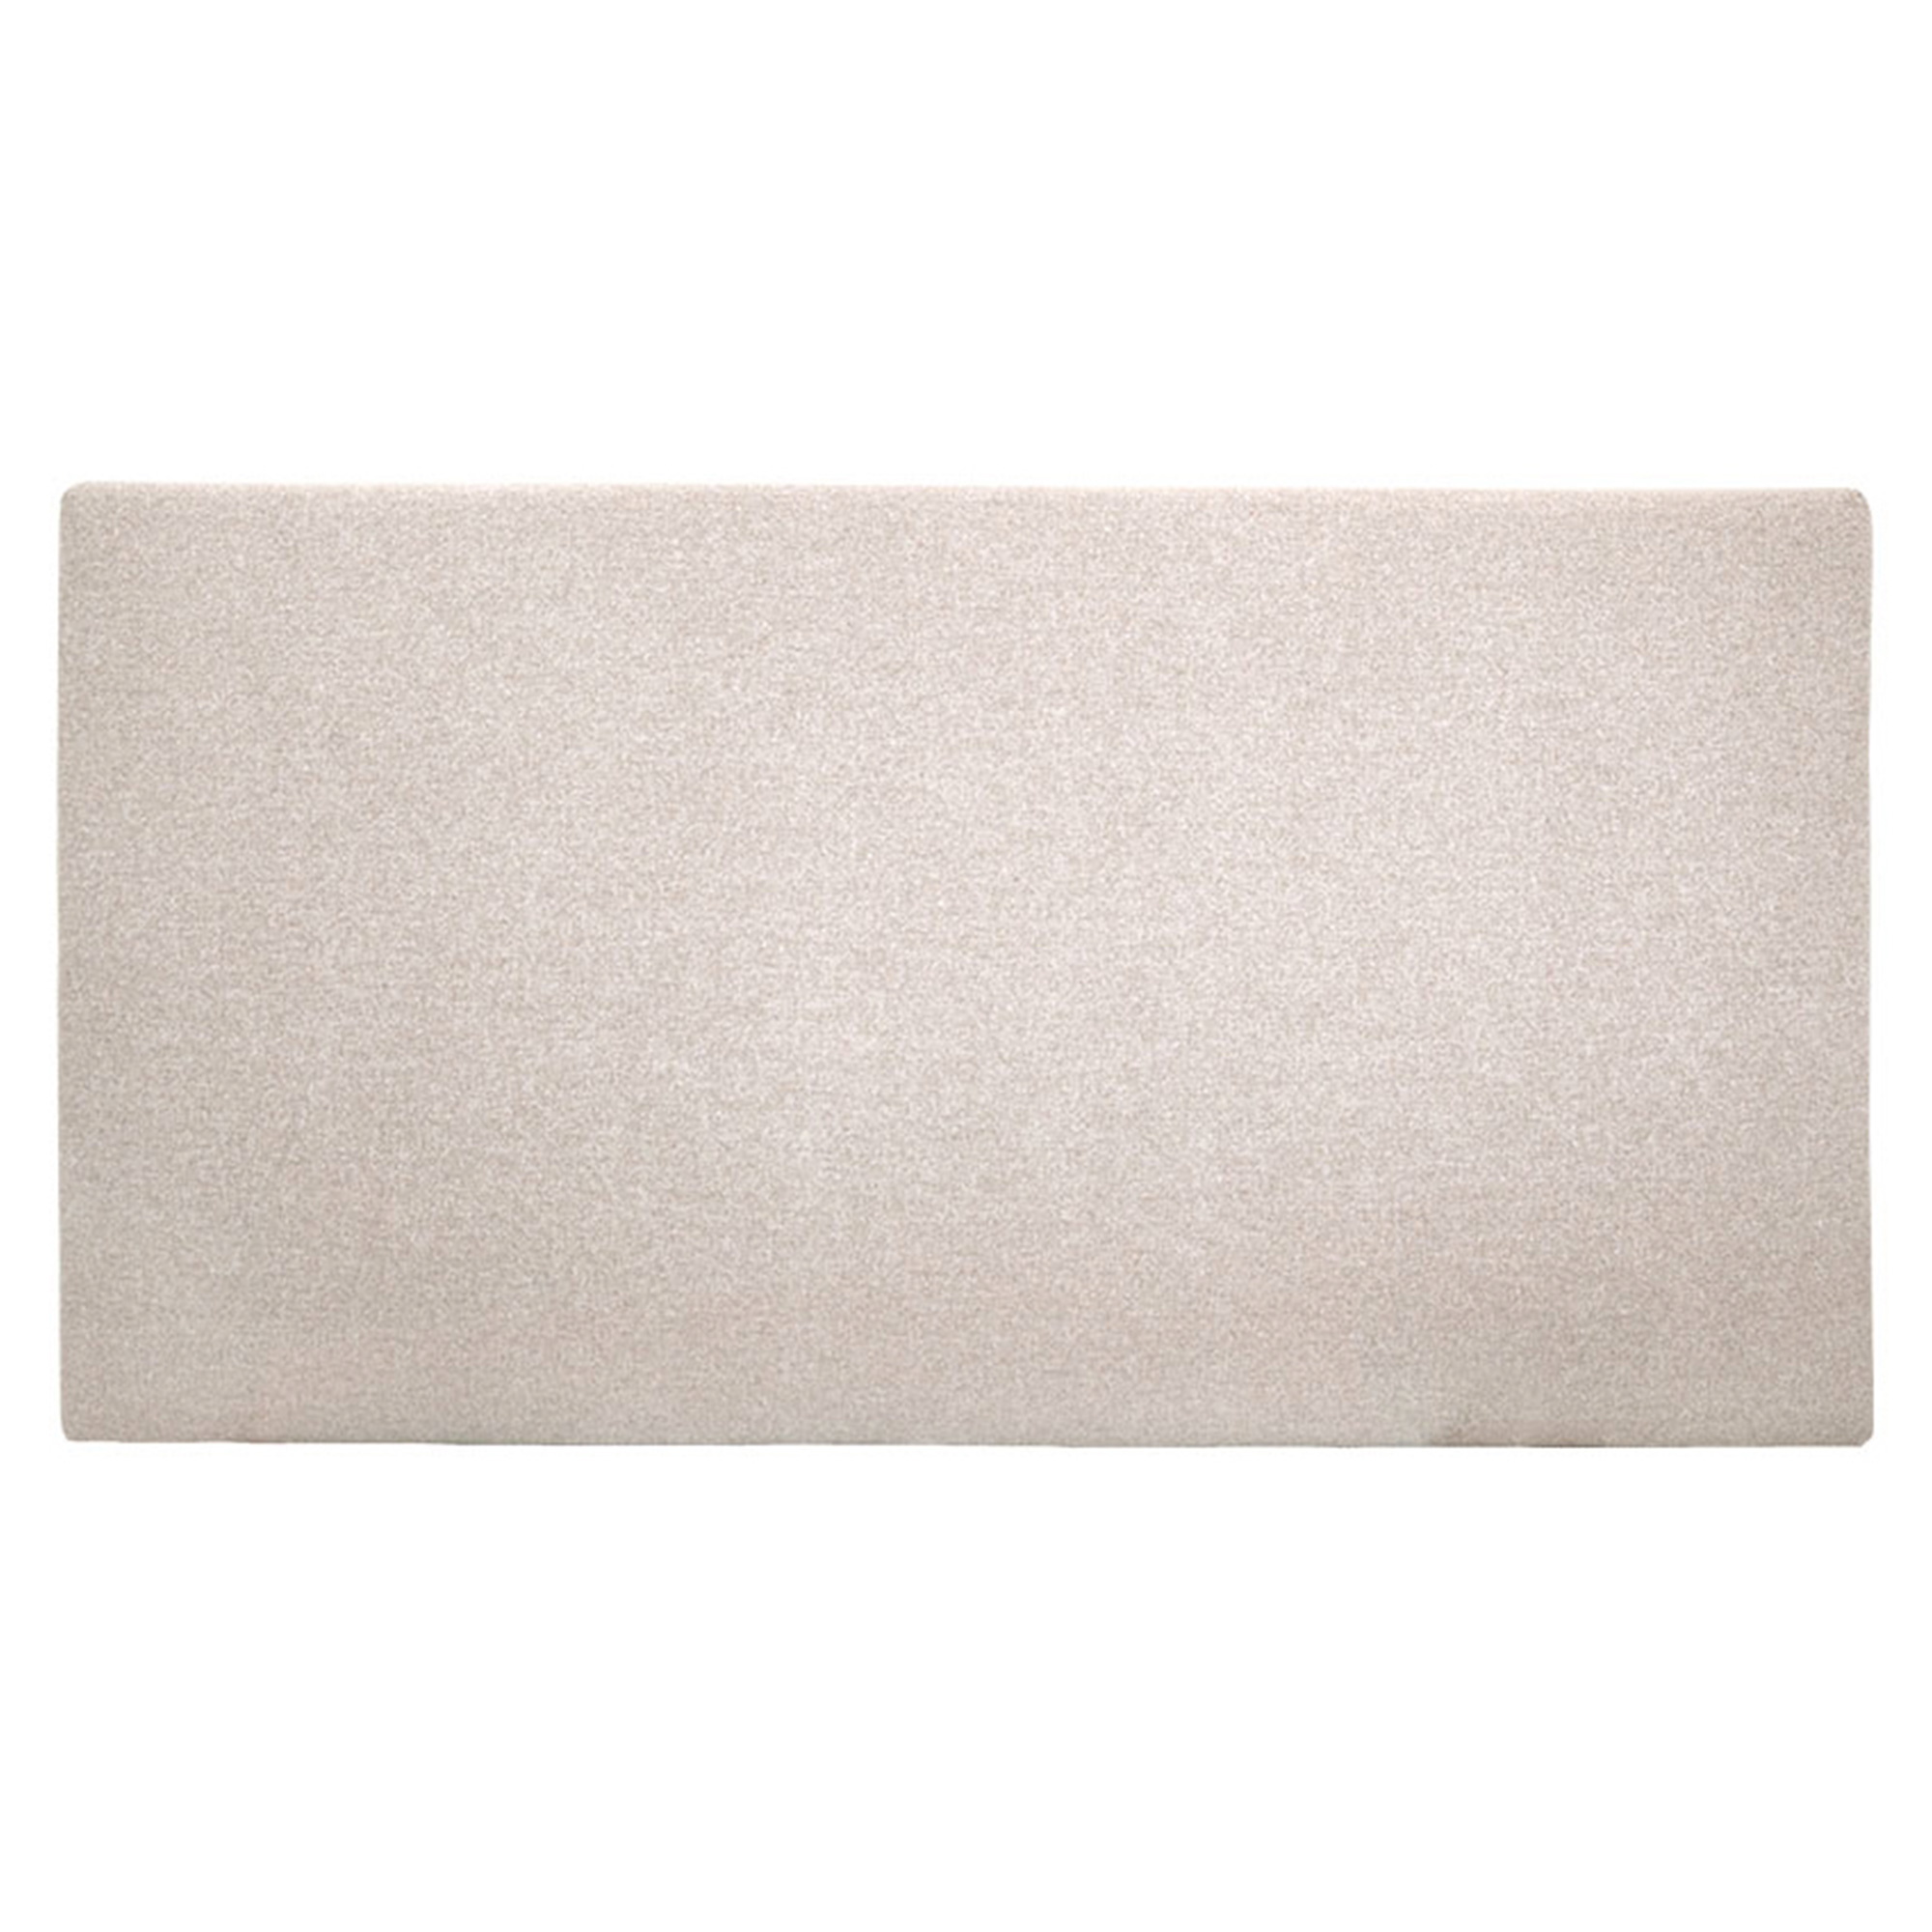 Tête de lit polyester lisse couleur beige 180x80cm